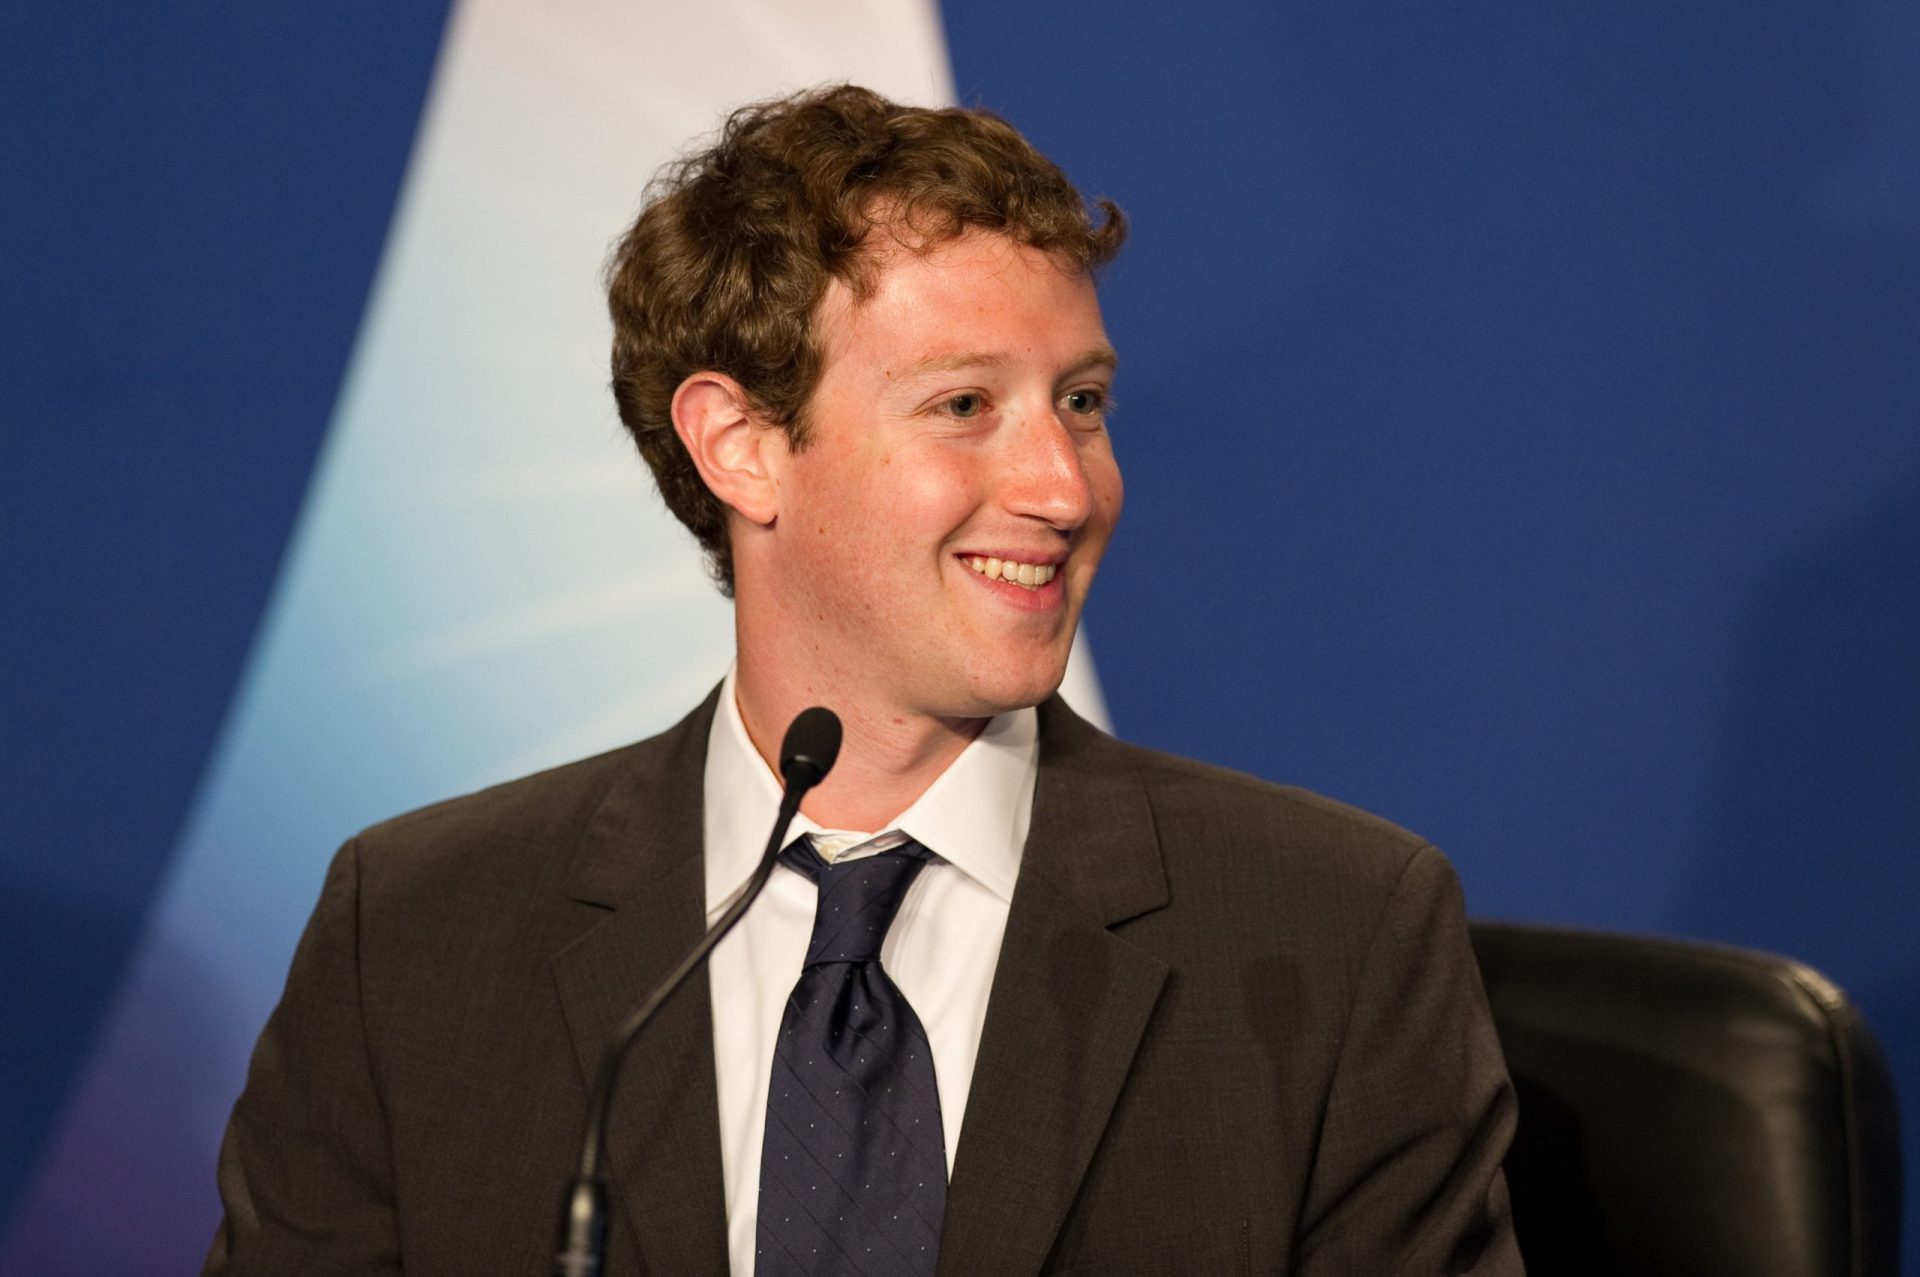 Fundador do Facebook quer construir a paz com a Internet